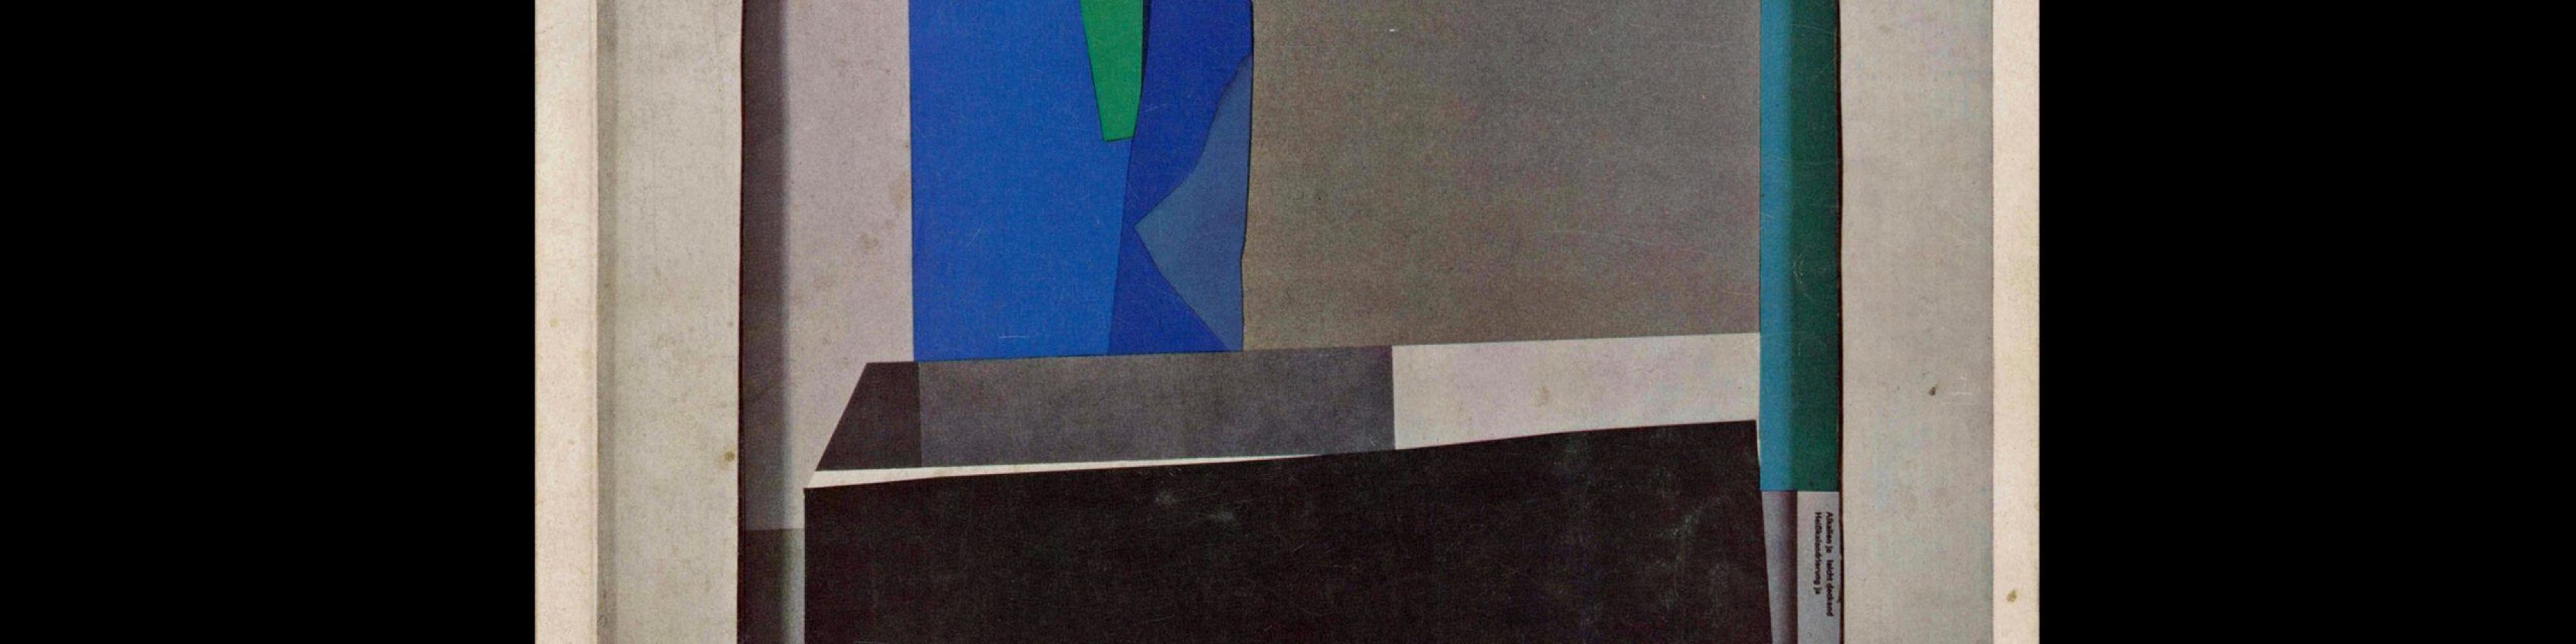 Gebrauchsgraphik, 3, 1965. Cover design by Klaus Warwas